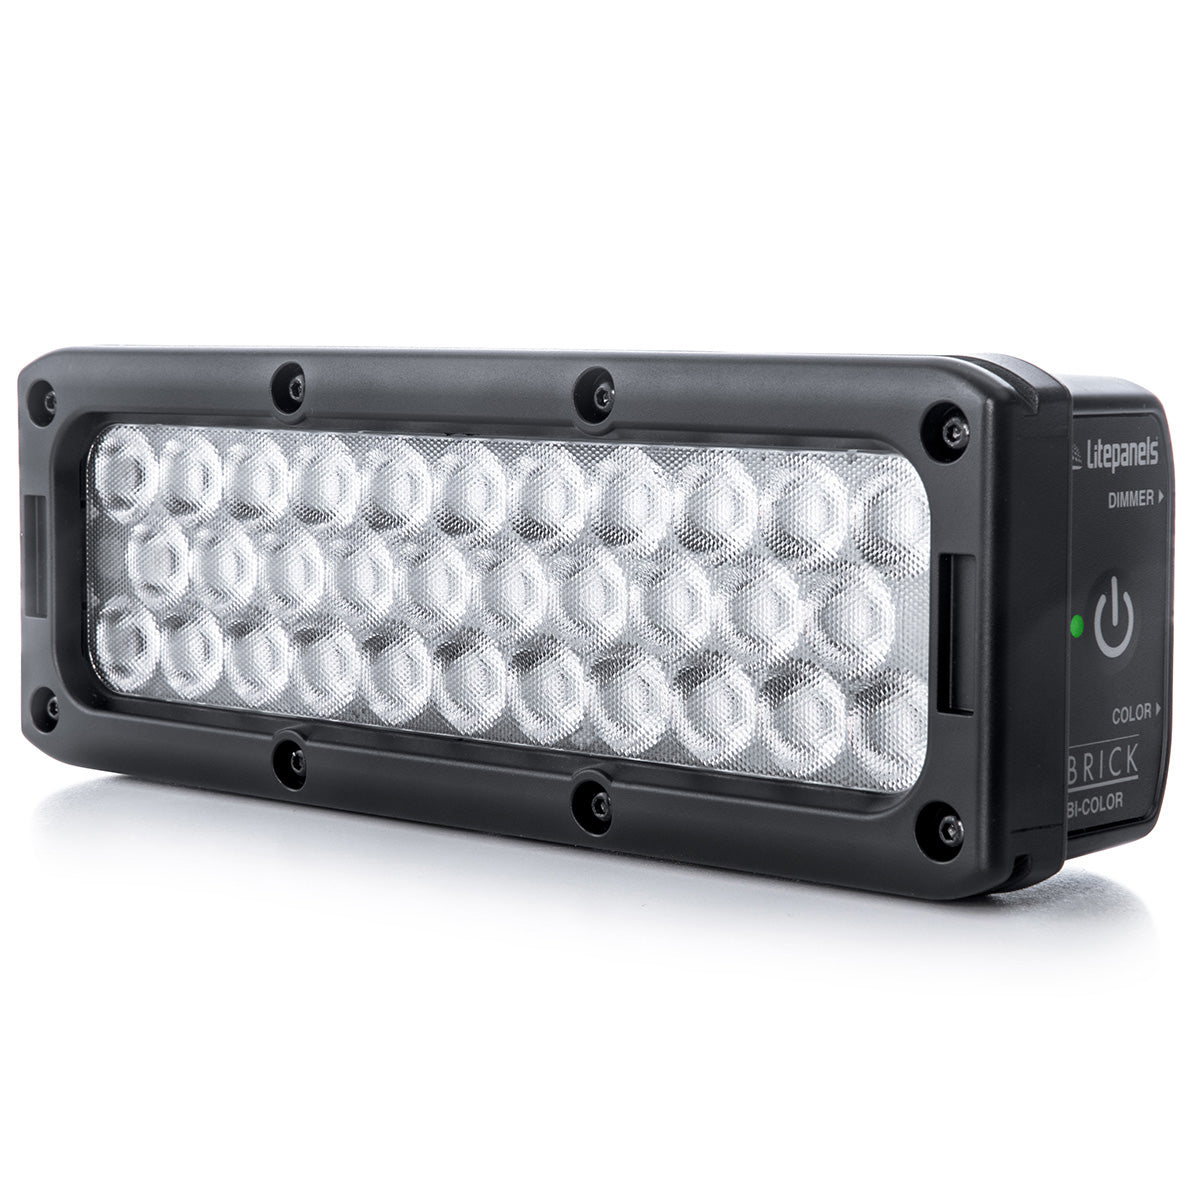 Litepanels(ライトパネルズ) LEDライト Brick バイカラーキット (910-0001)